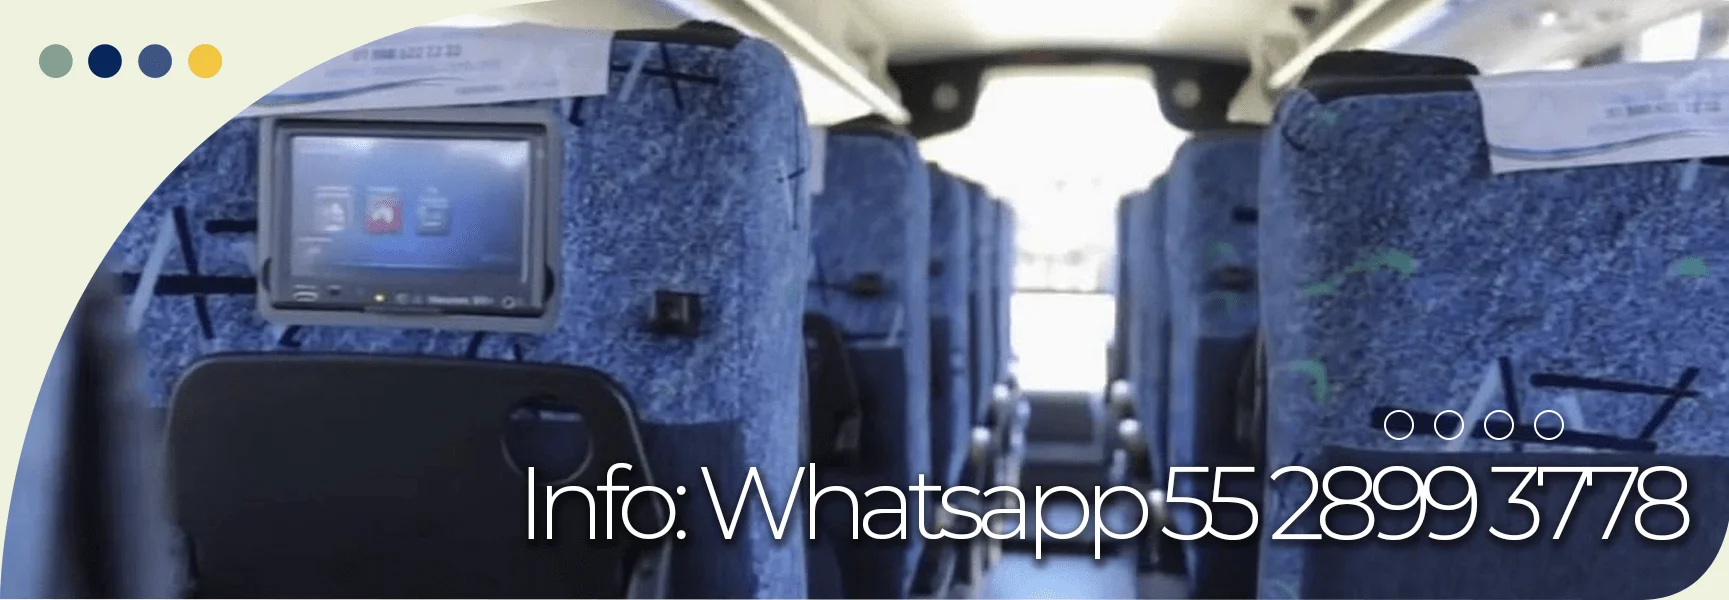 viajes en autobús a guadalajara Autovías y la Línea